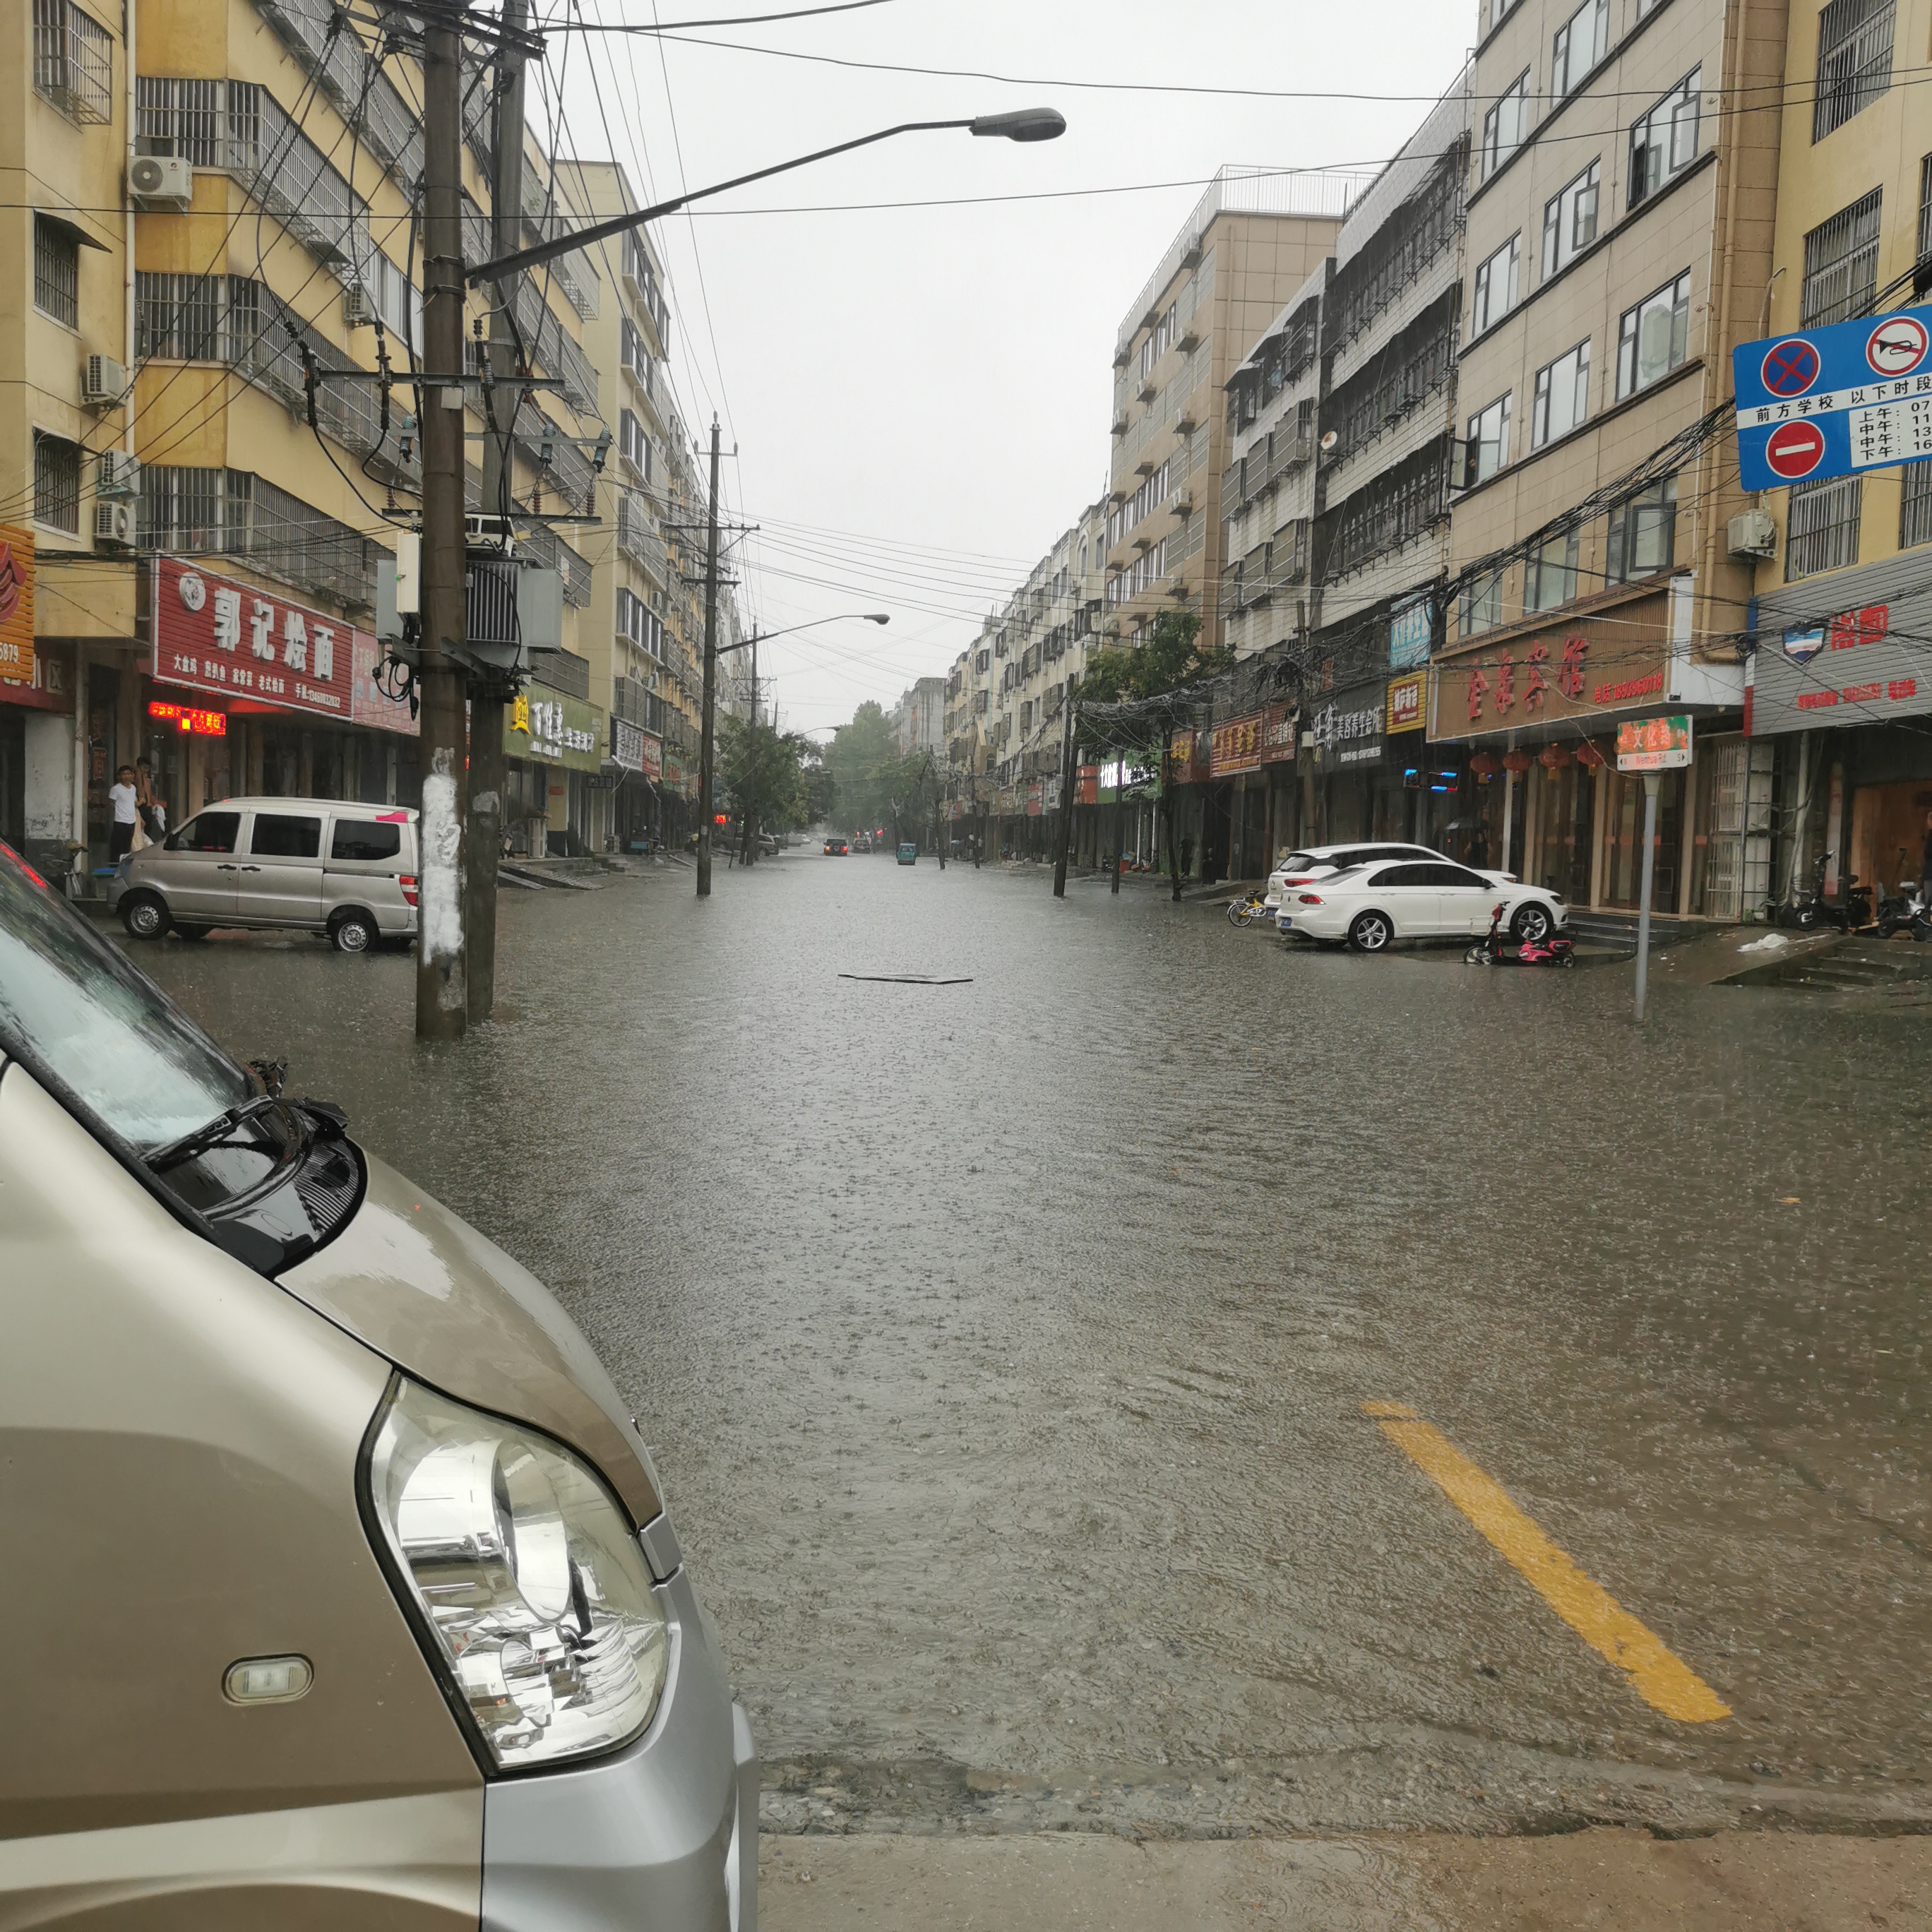 去年江西遭遇强降雨过程10次 直接经济损失35亿余元